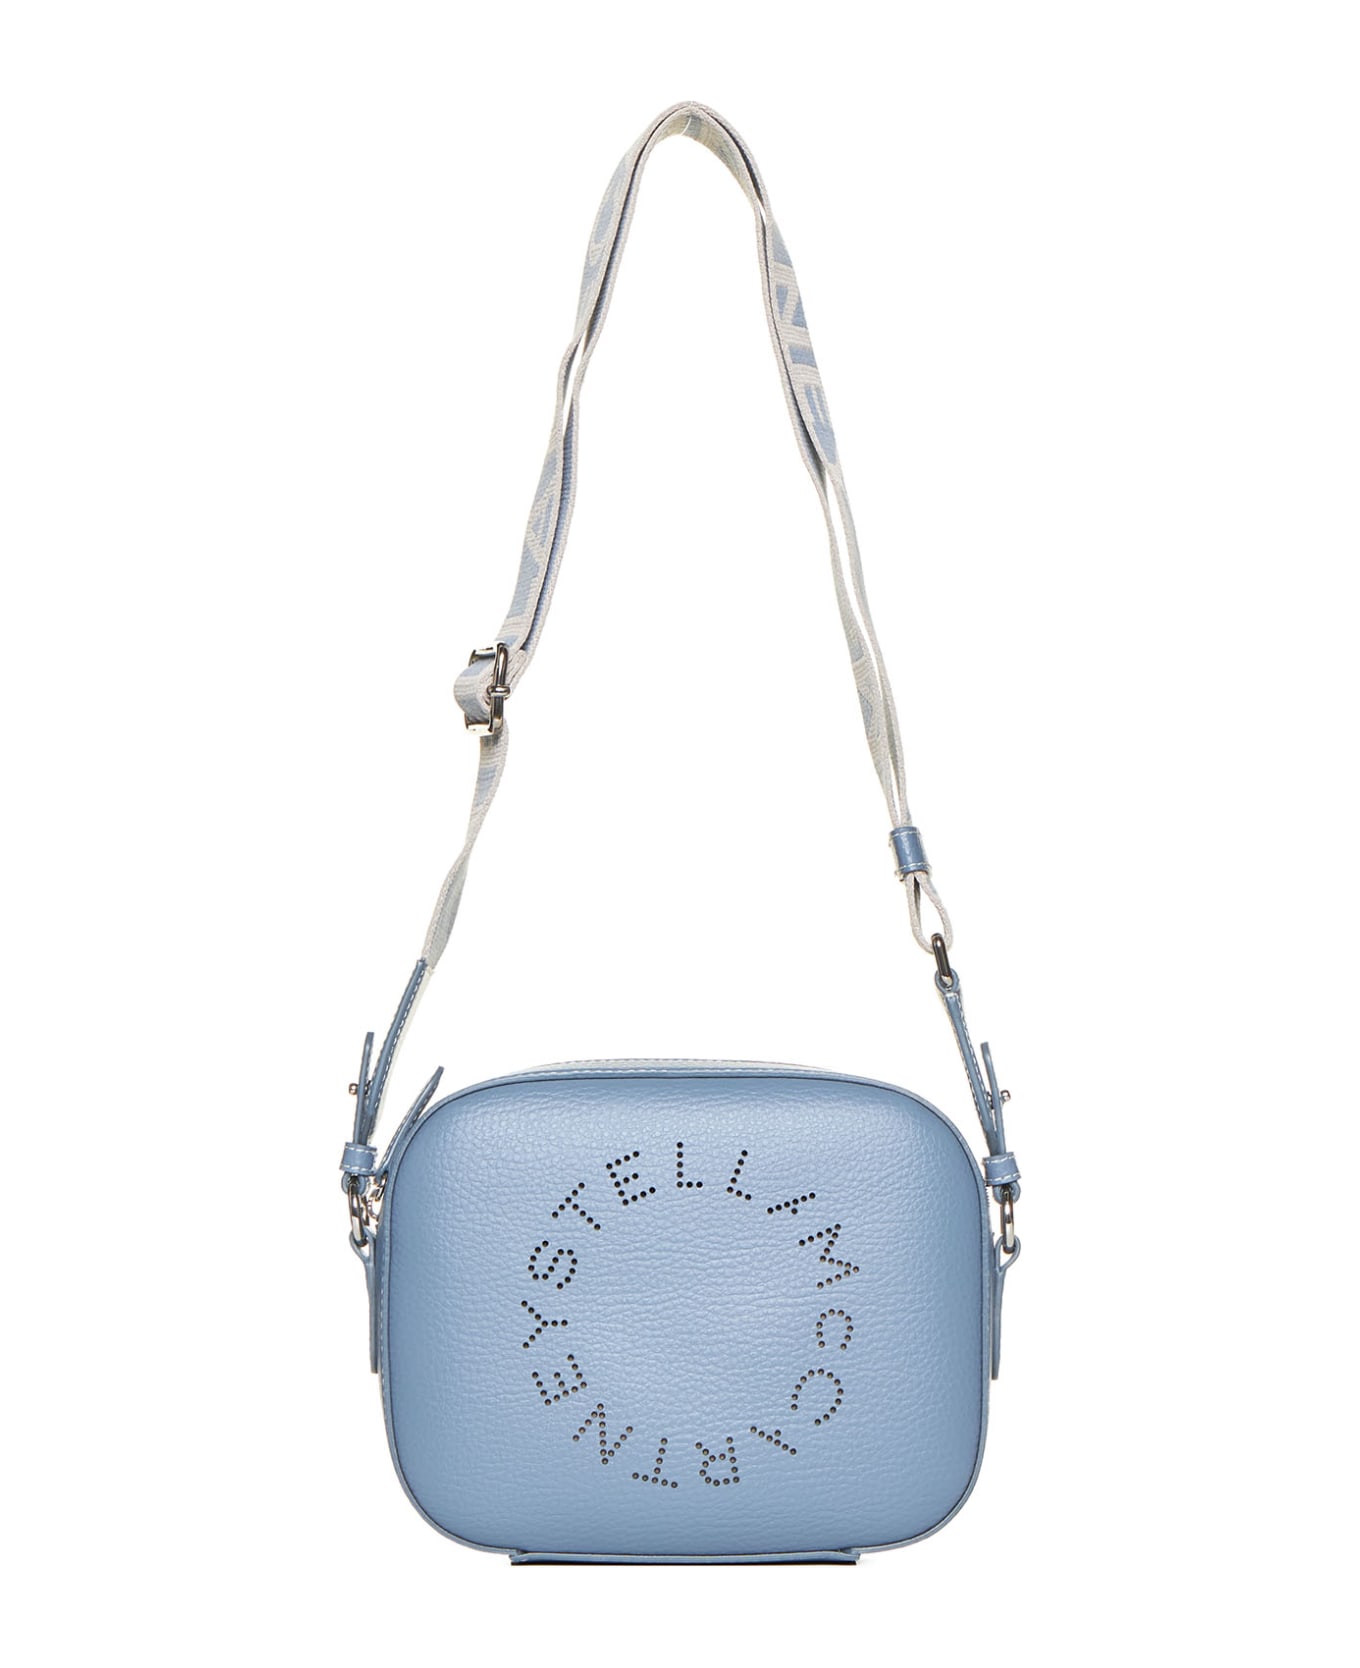 Stella McCartney Mini Camera Bag With Logo - Blue grey